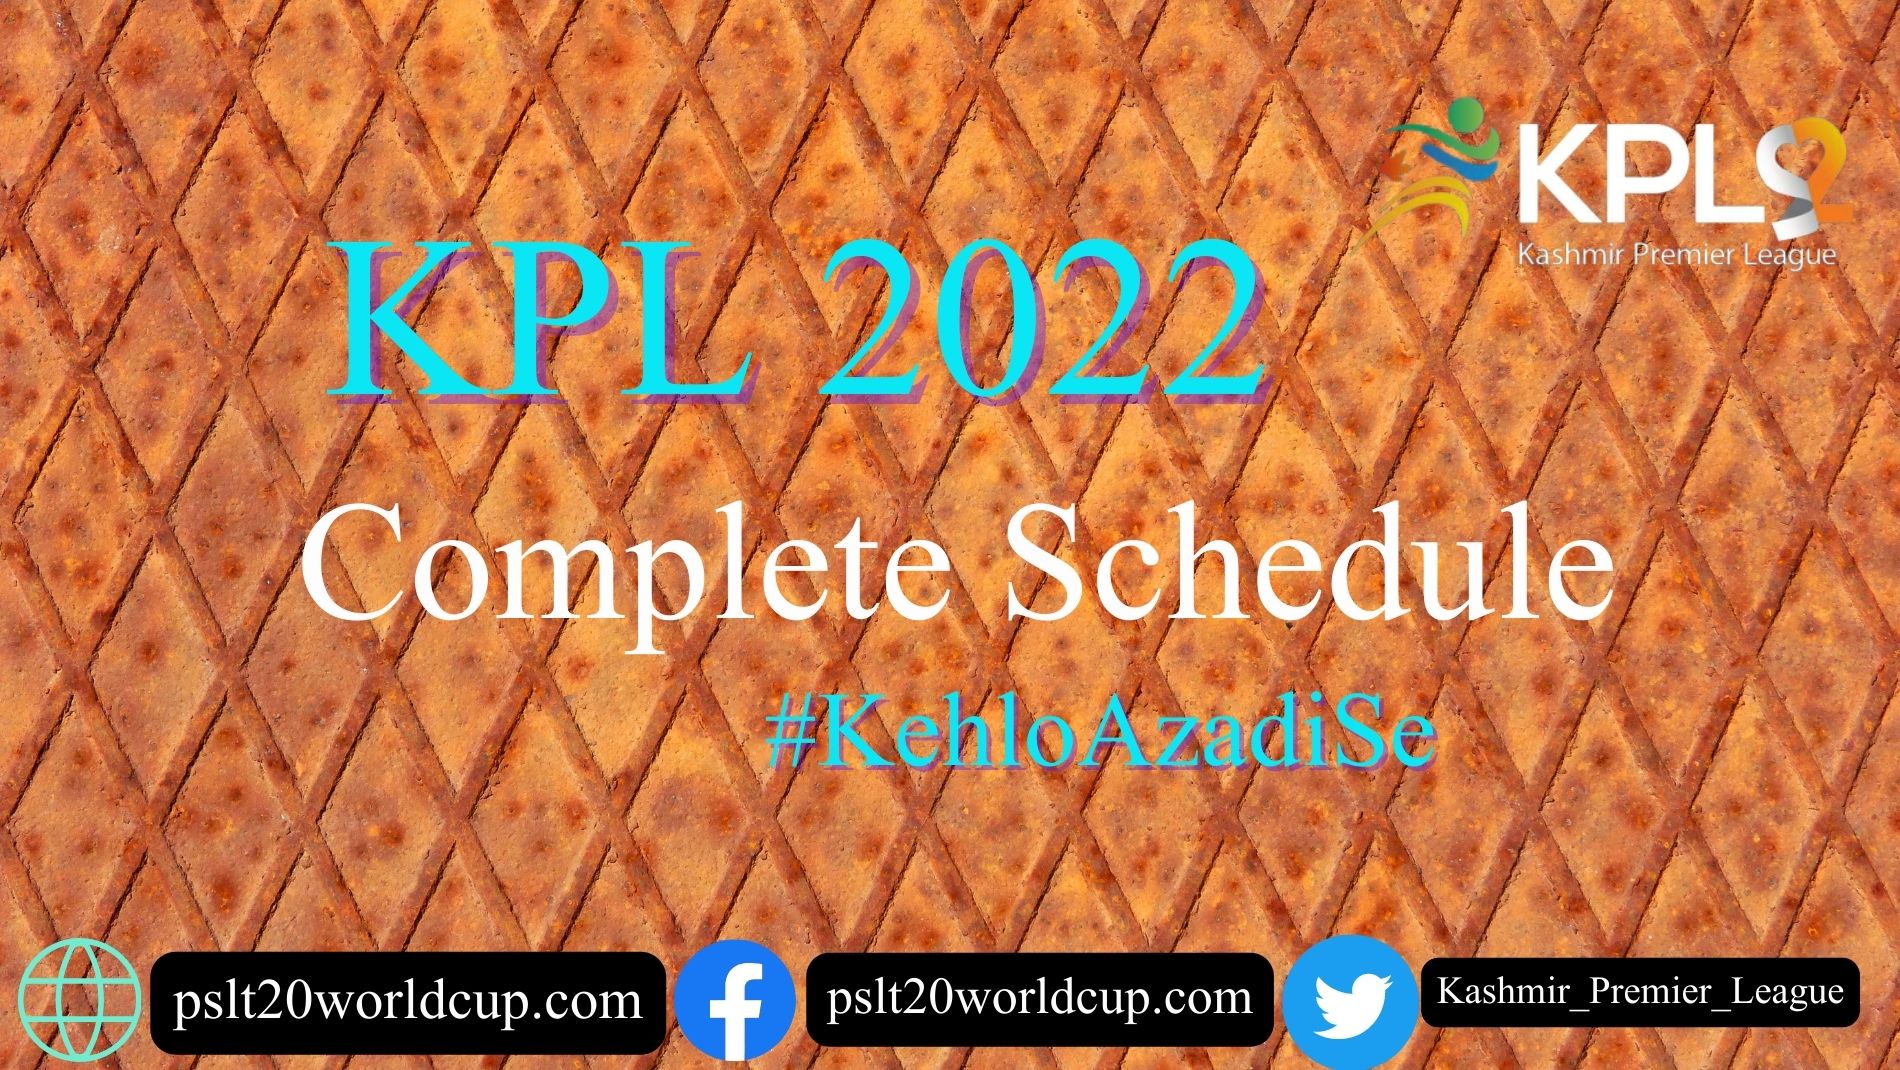 Kpl 2022 schedule